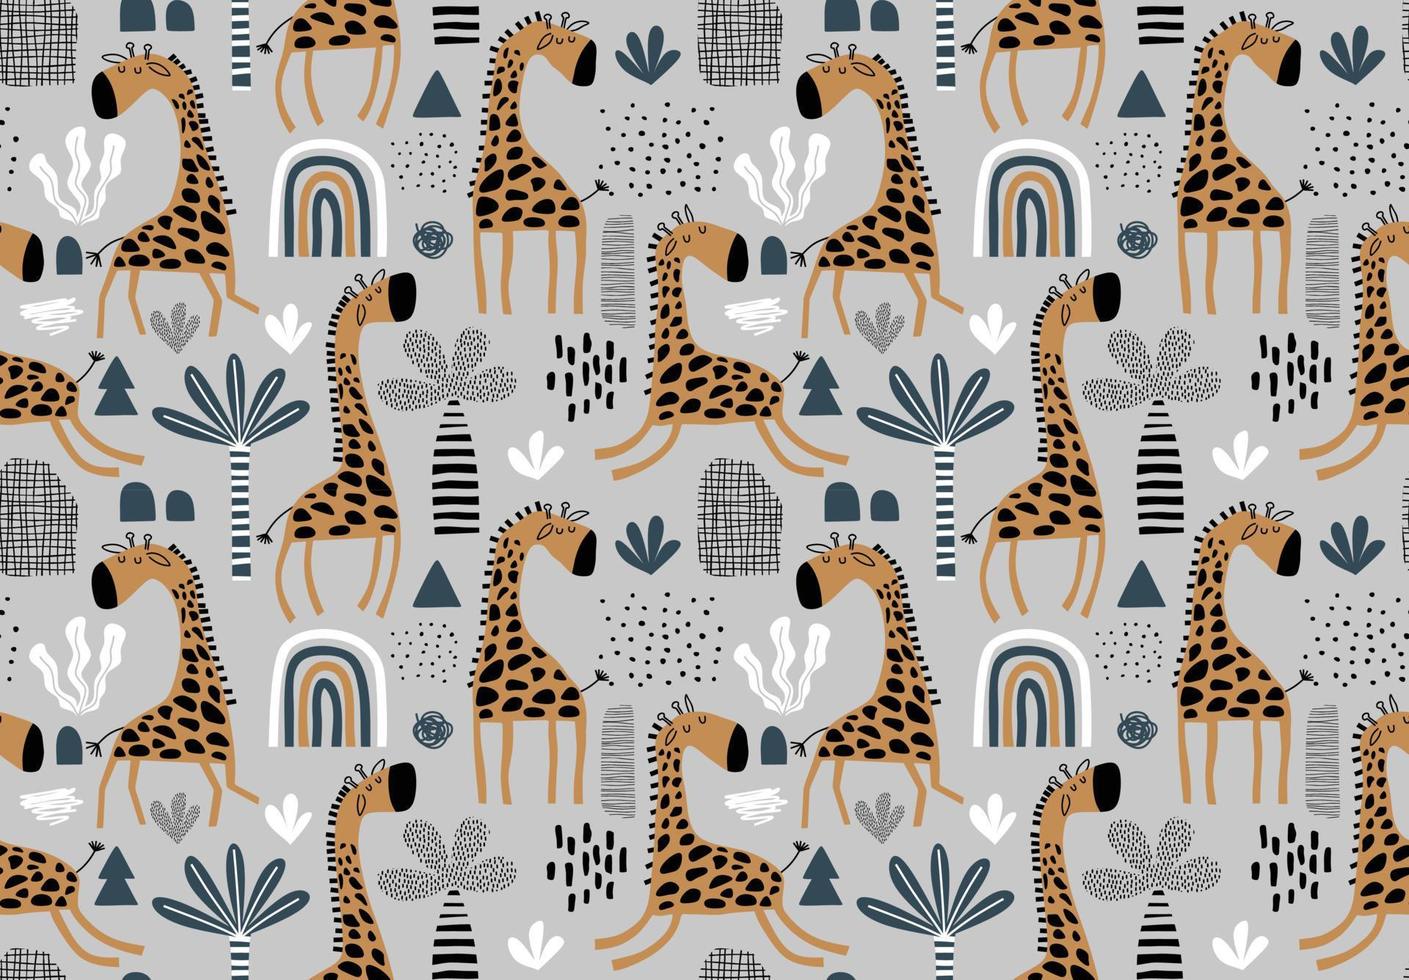 motif simple répétitif enfantin coloré dessiné à la main avec des girafes mignonnes vecteur